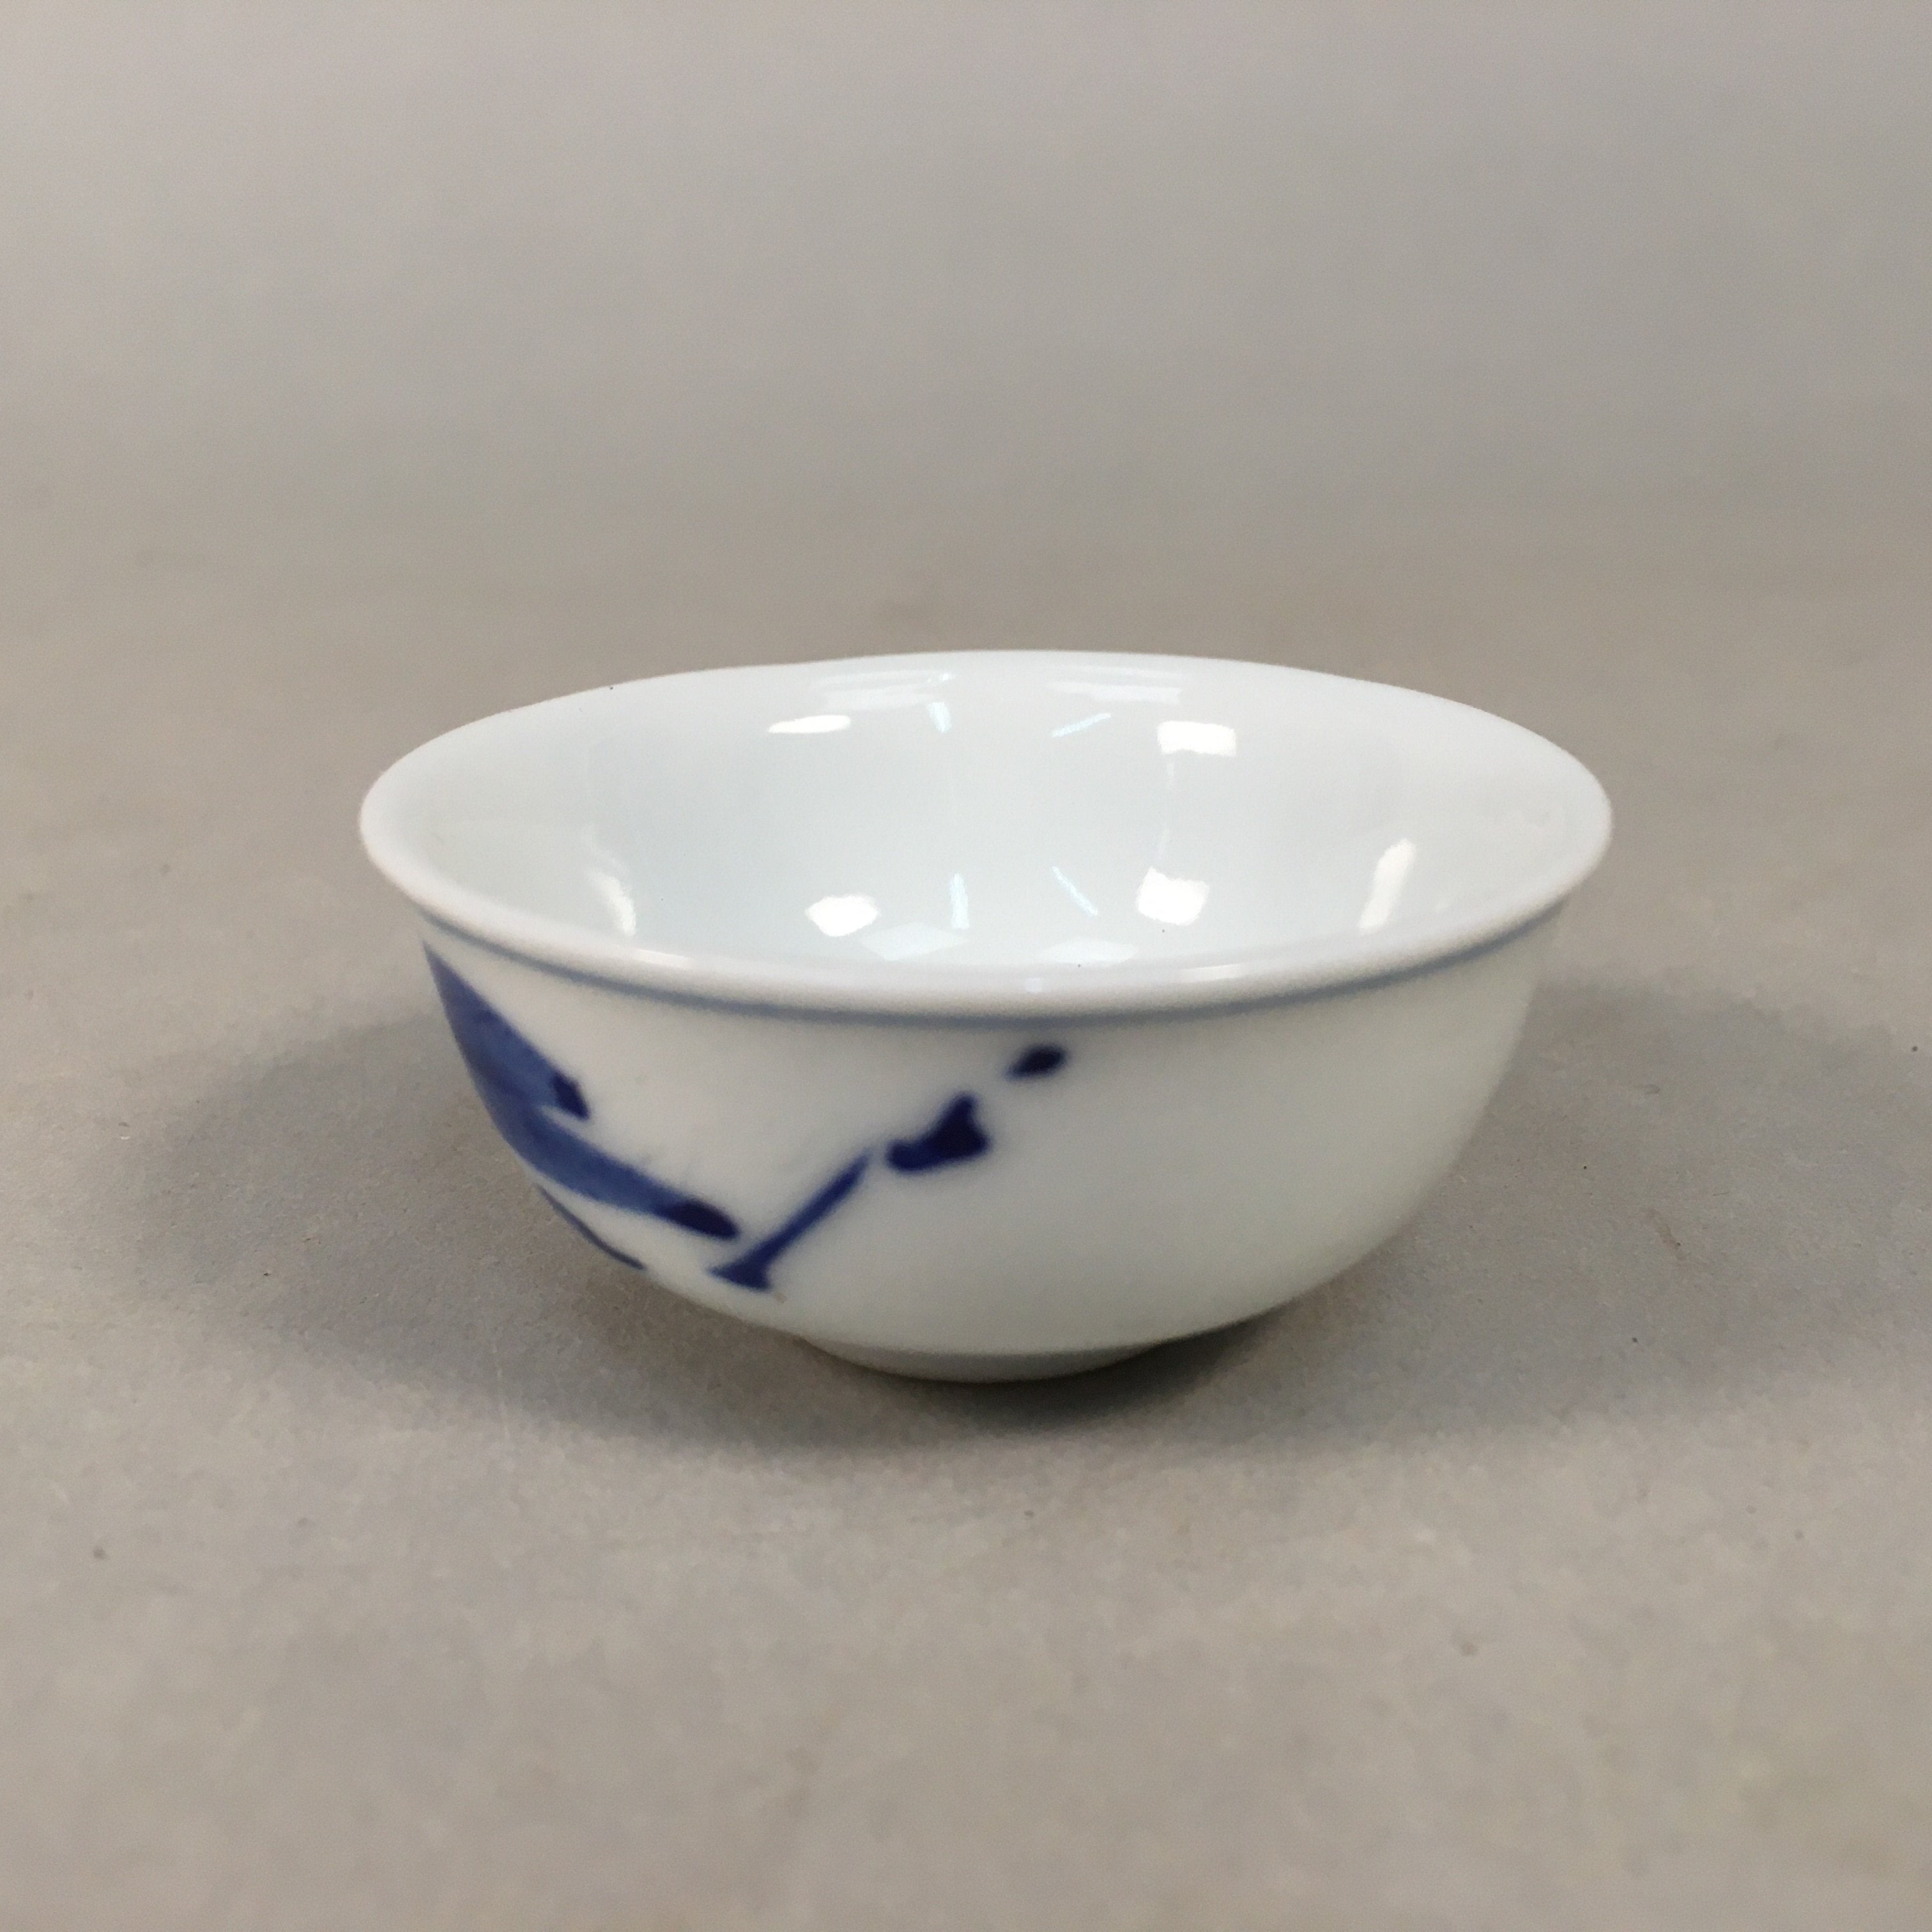 Japanese Porcelain Sake Cup Guinomi Sakazuki Vtg Blue White Mountain GU836